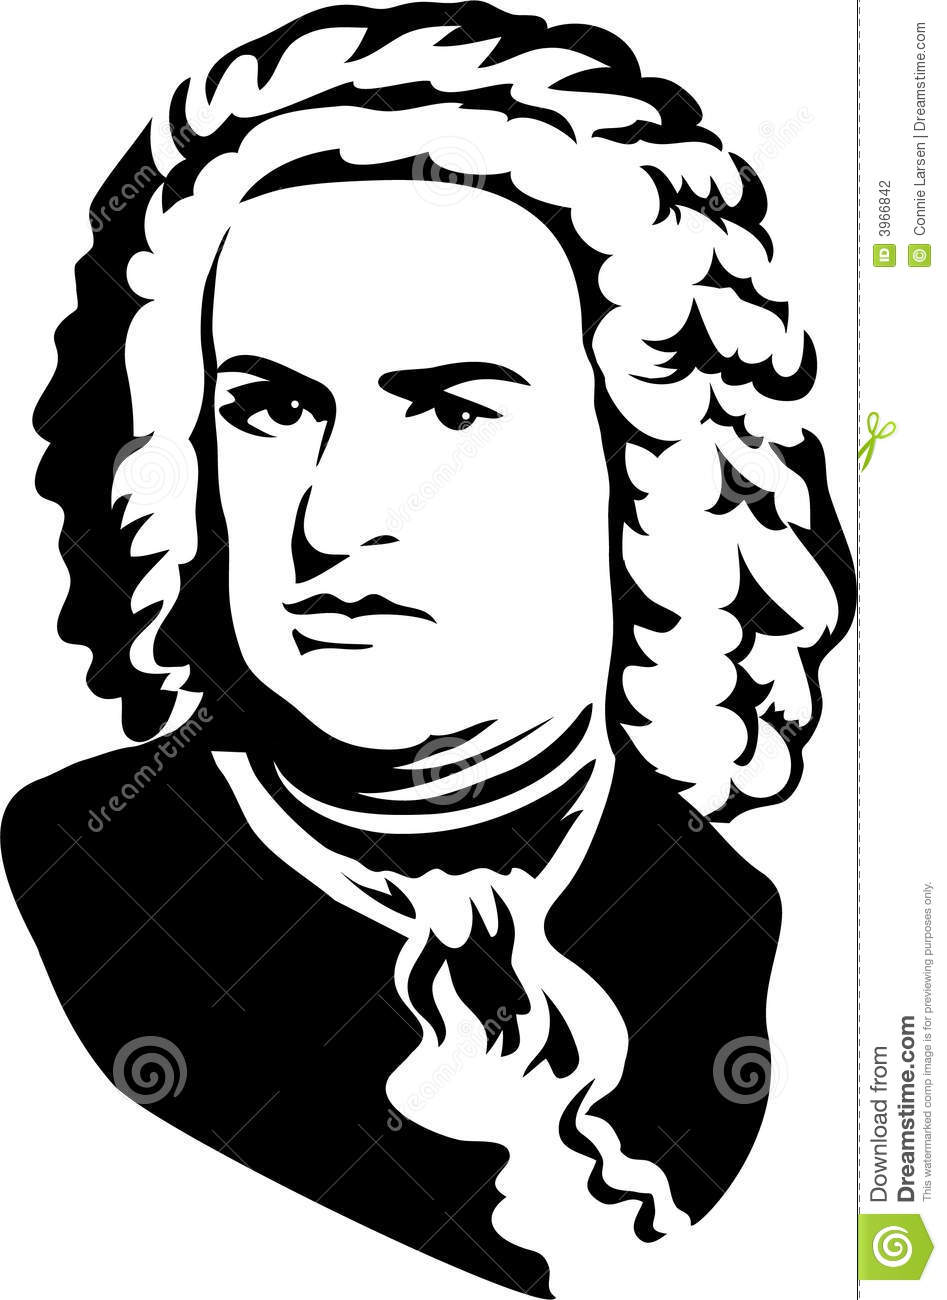 Bach clipart.